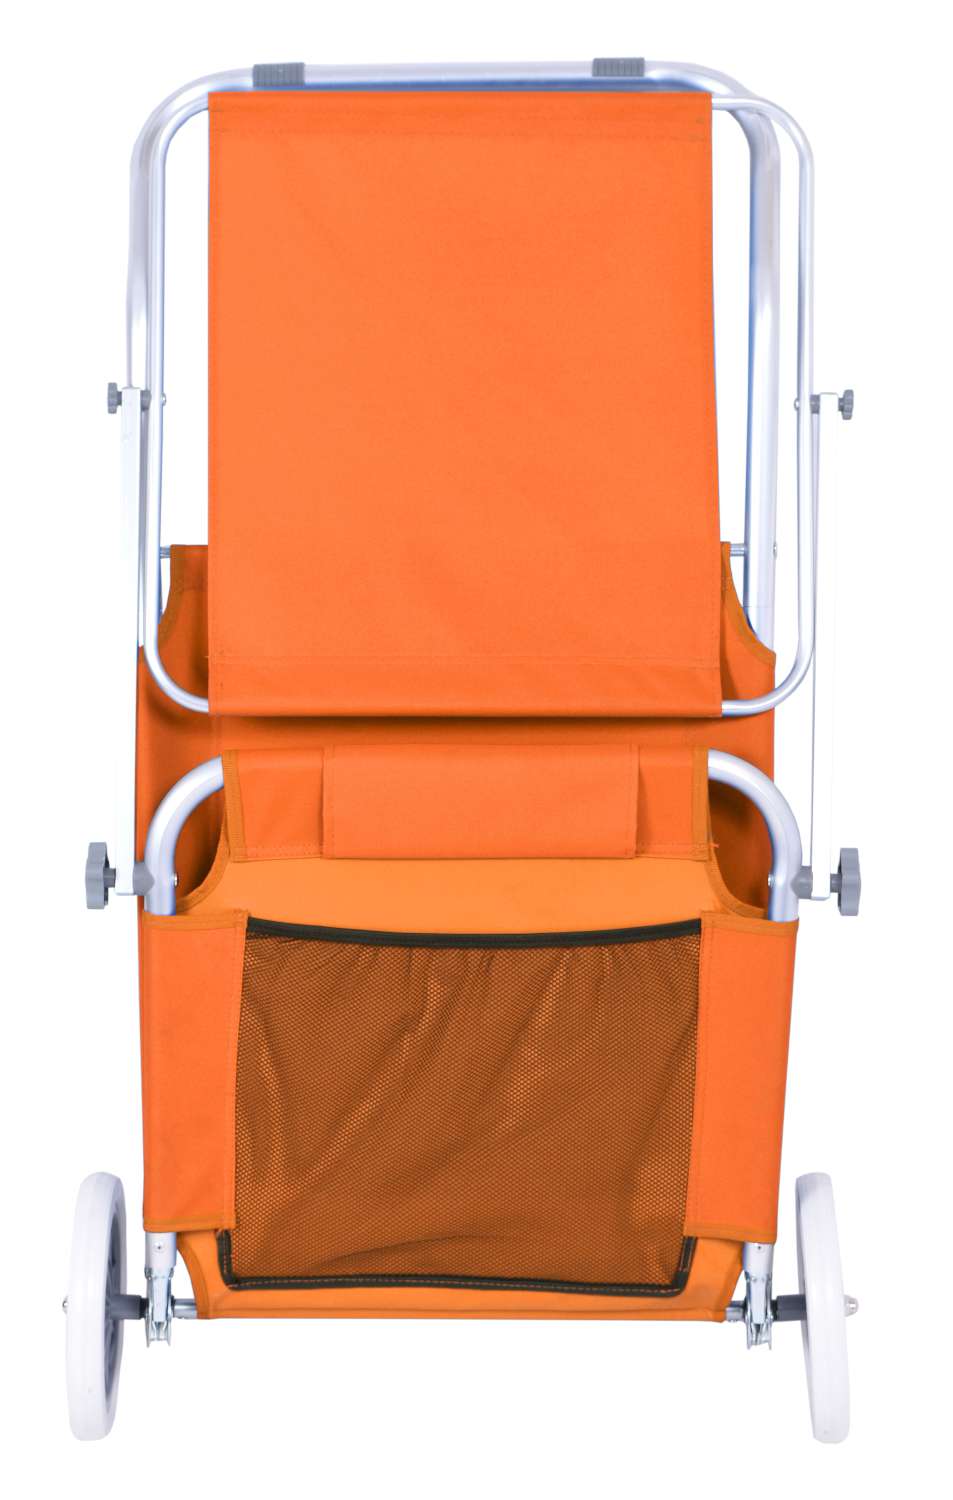 Leżak plażowy z kółkami Martin pomarańczowy ORANGE